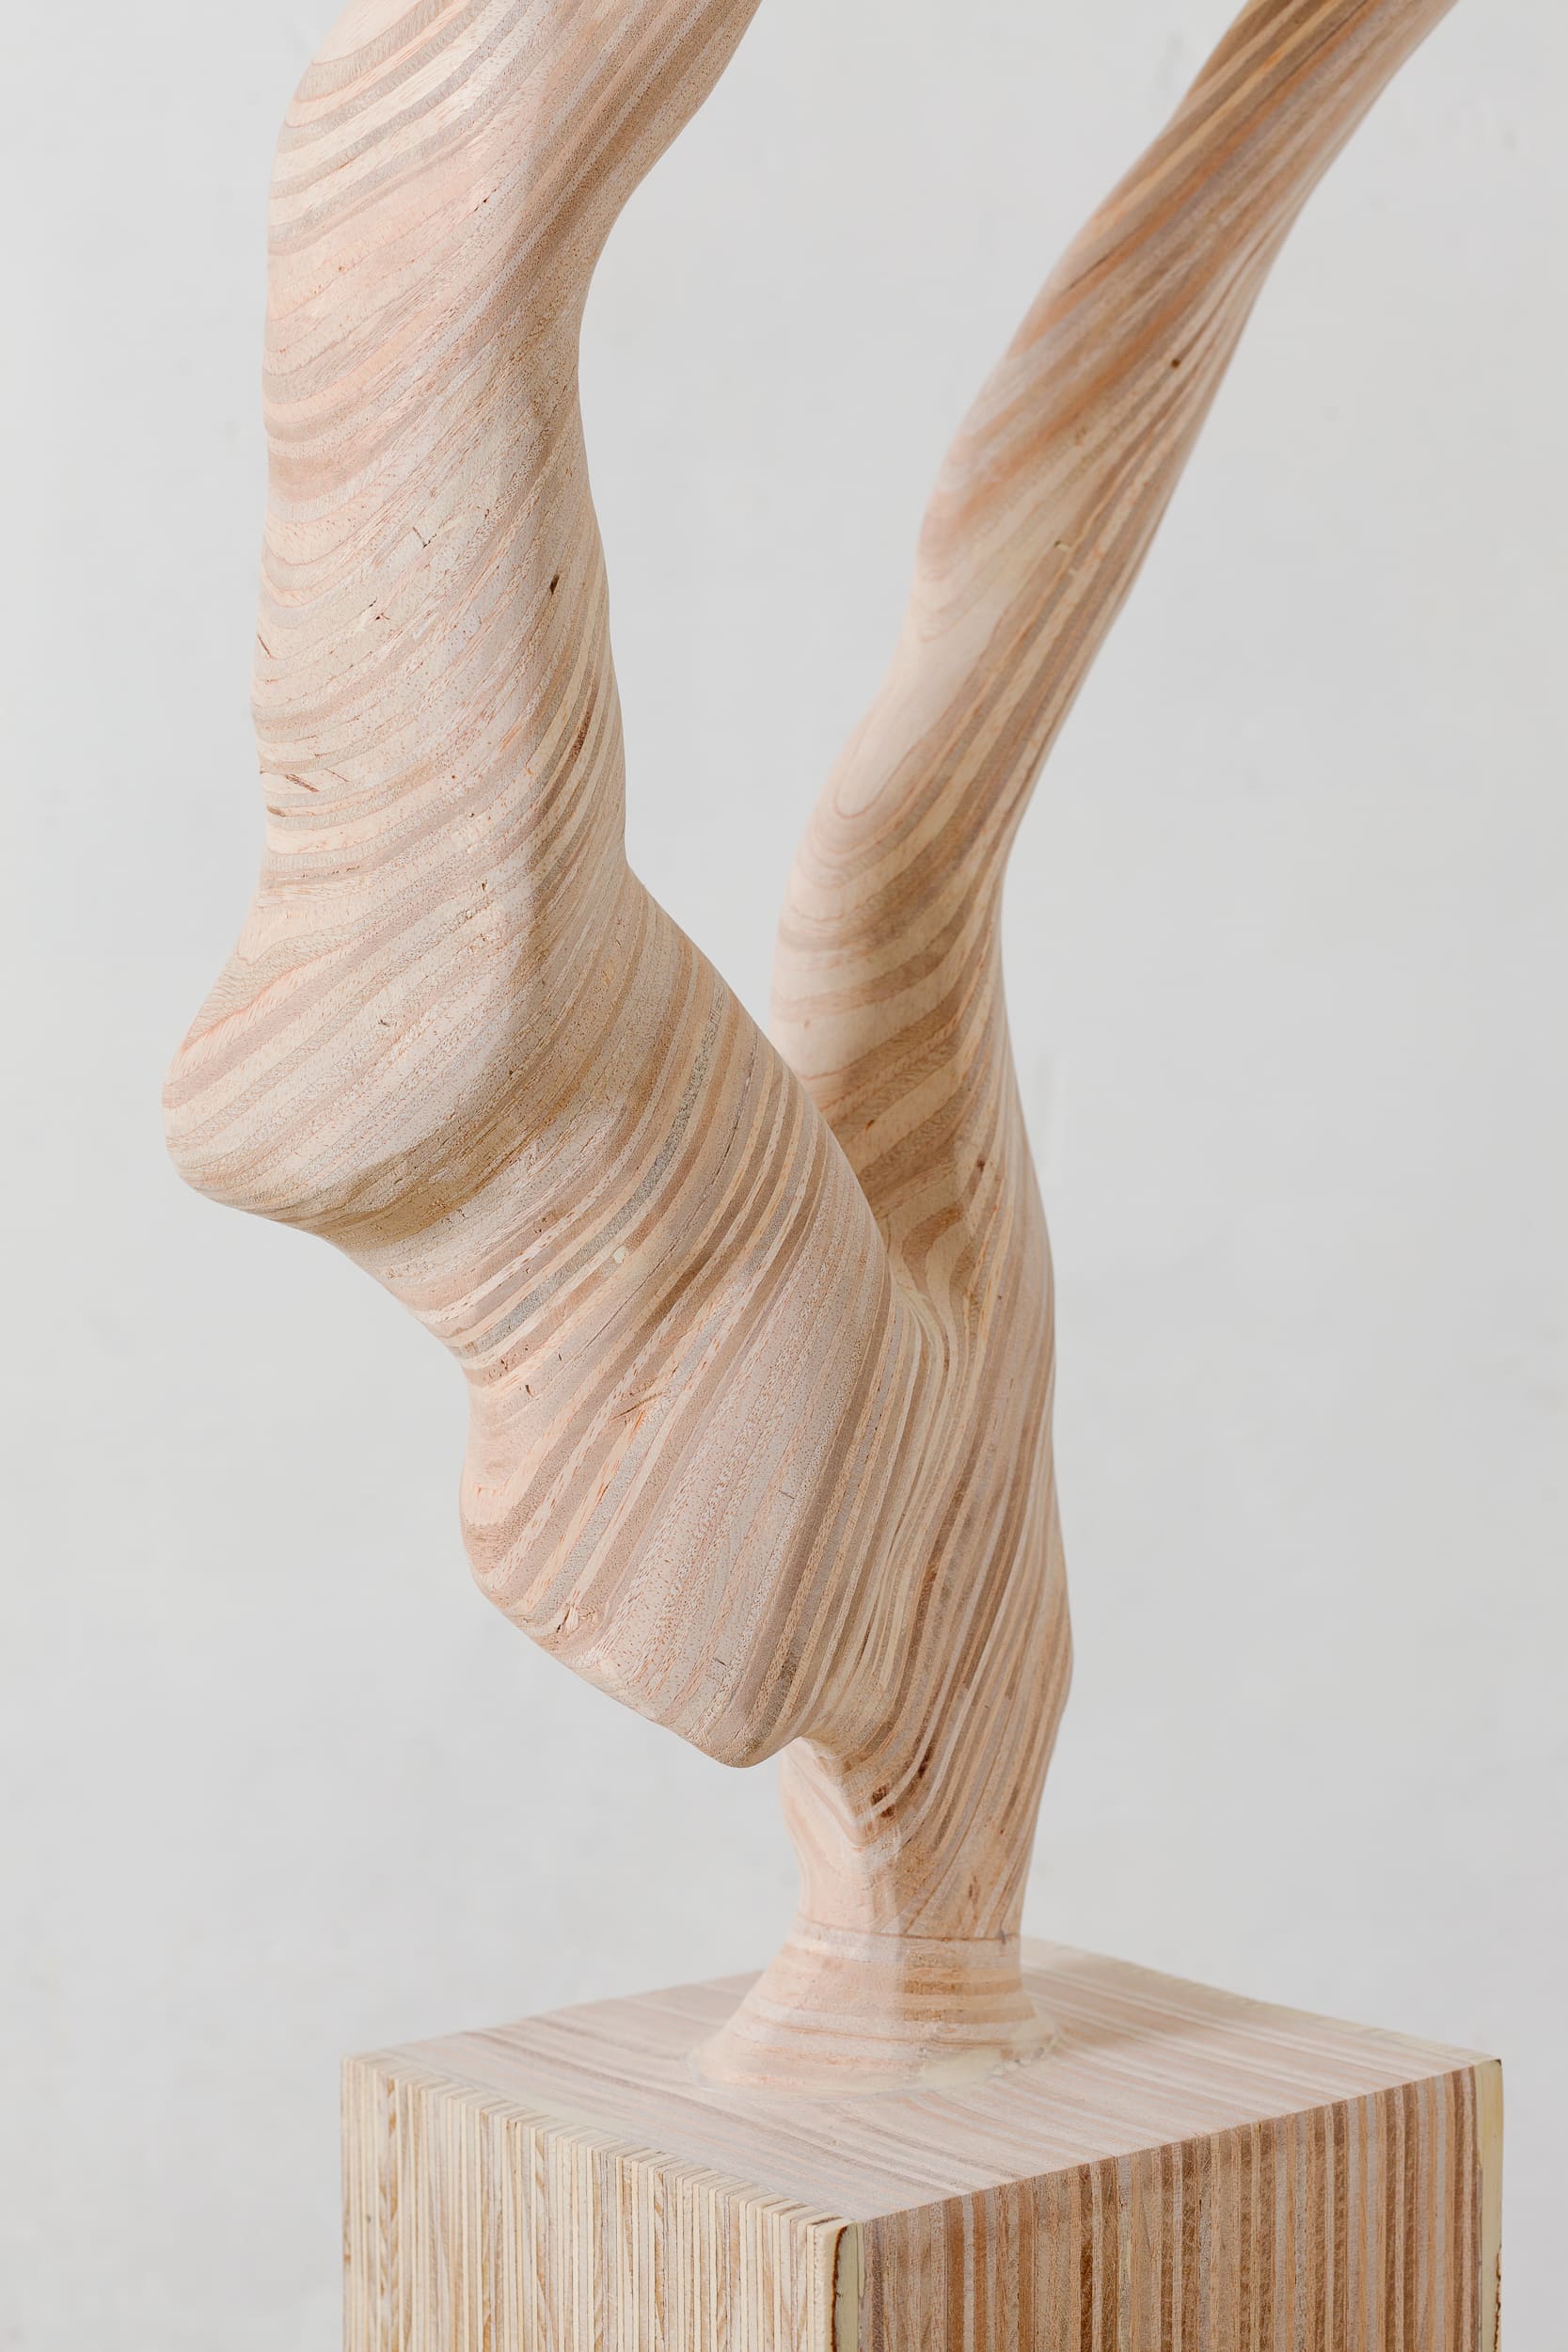 Wood N°33 (with pedestal)2 copy